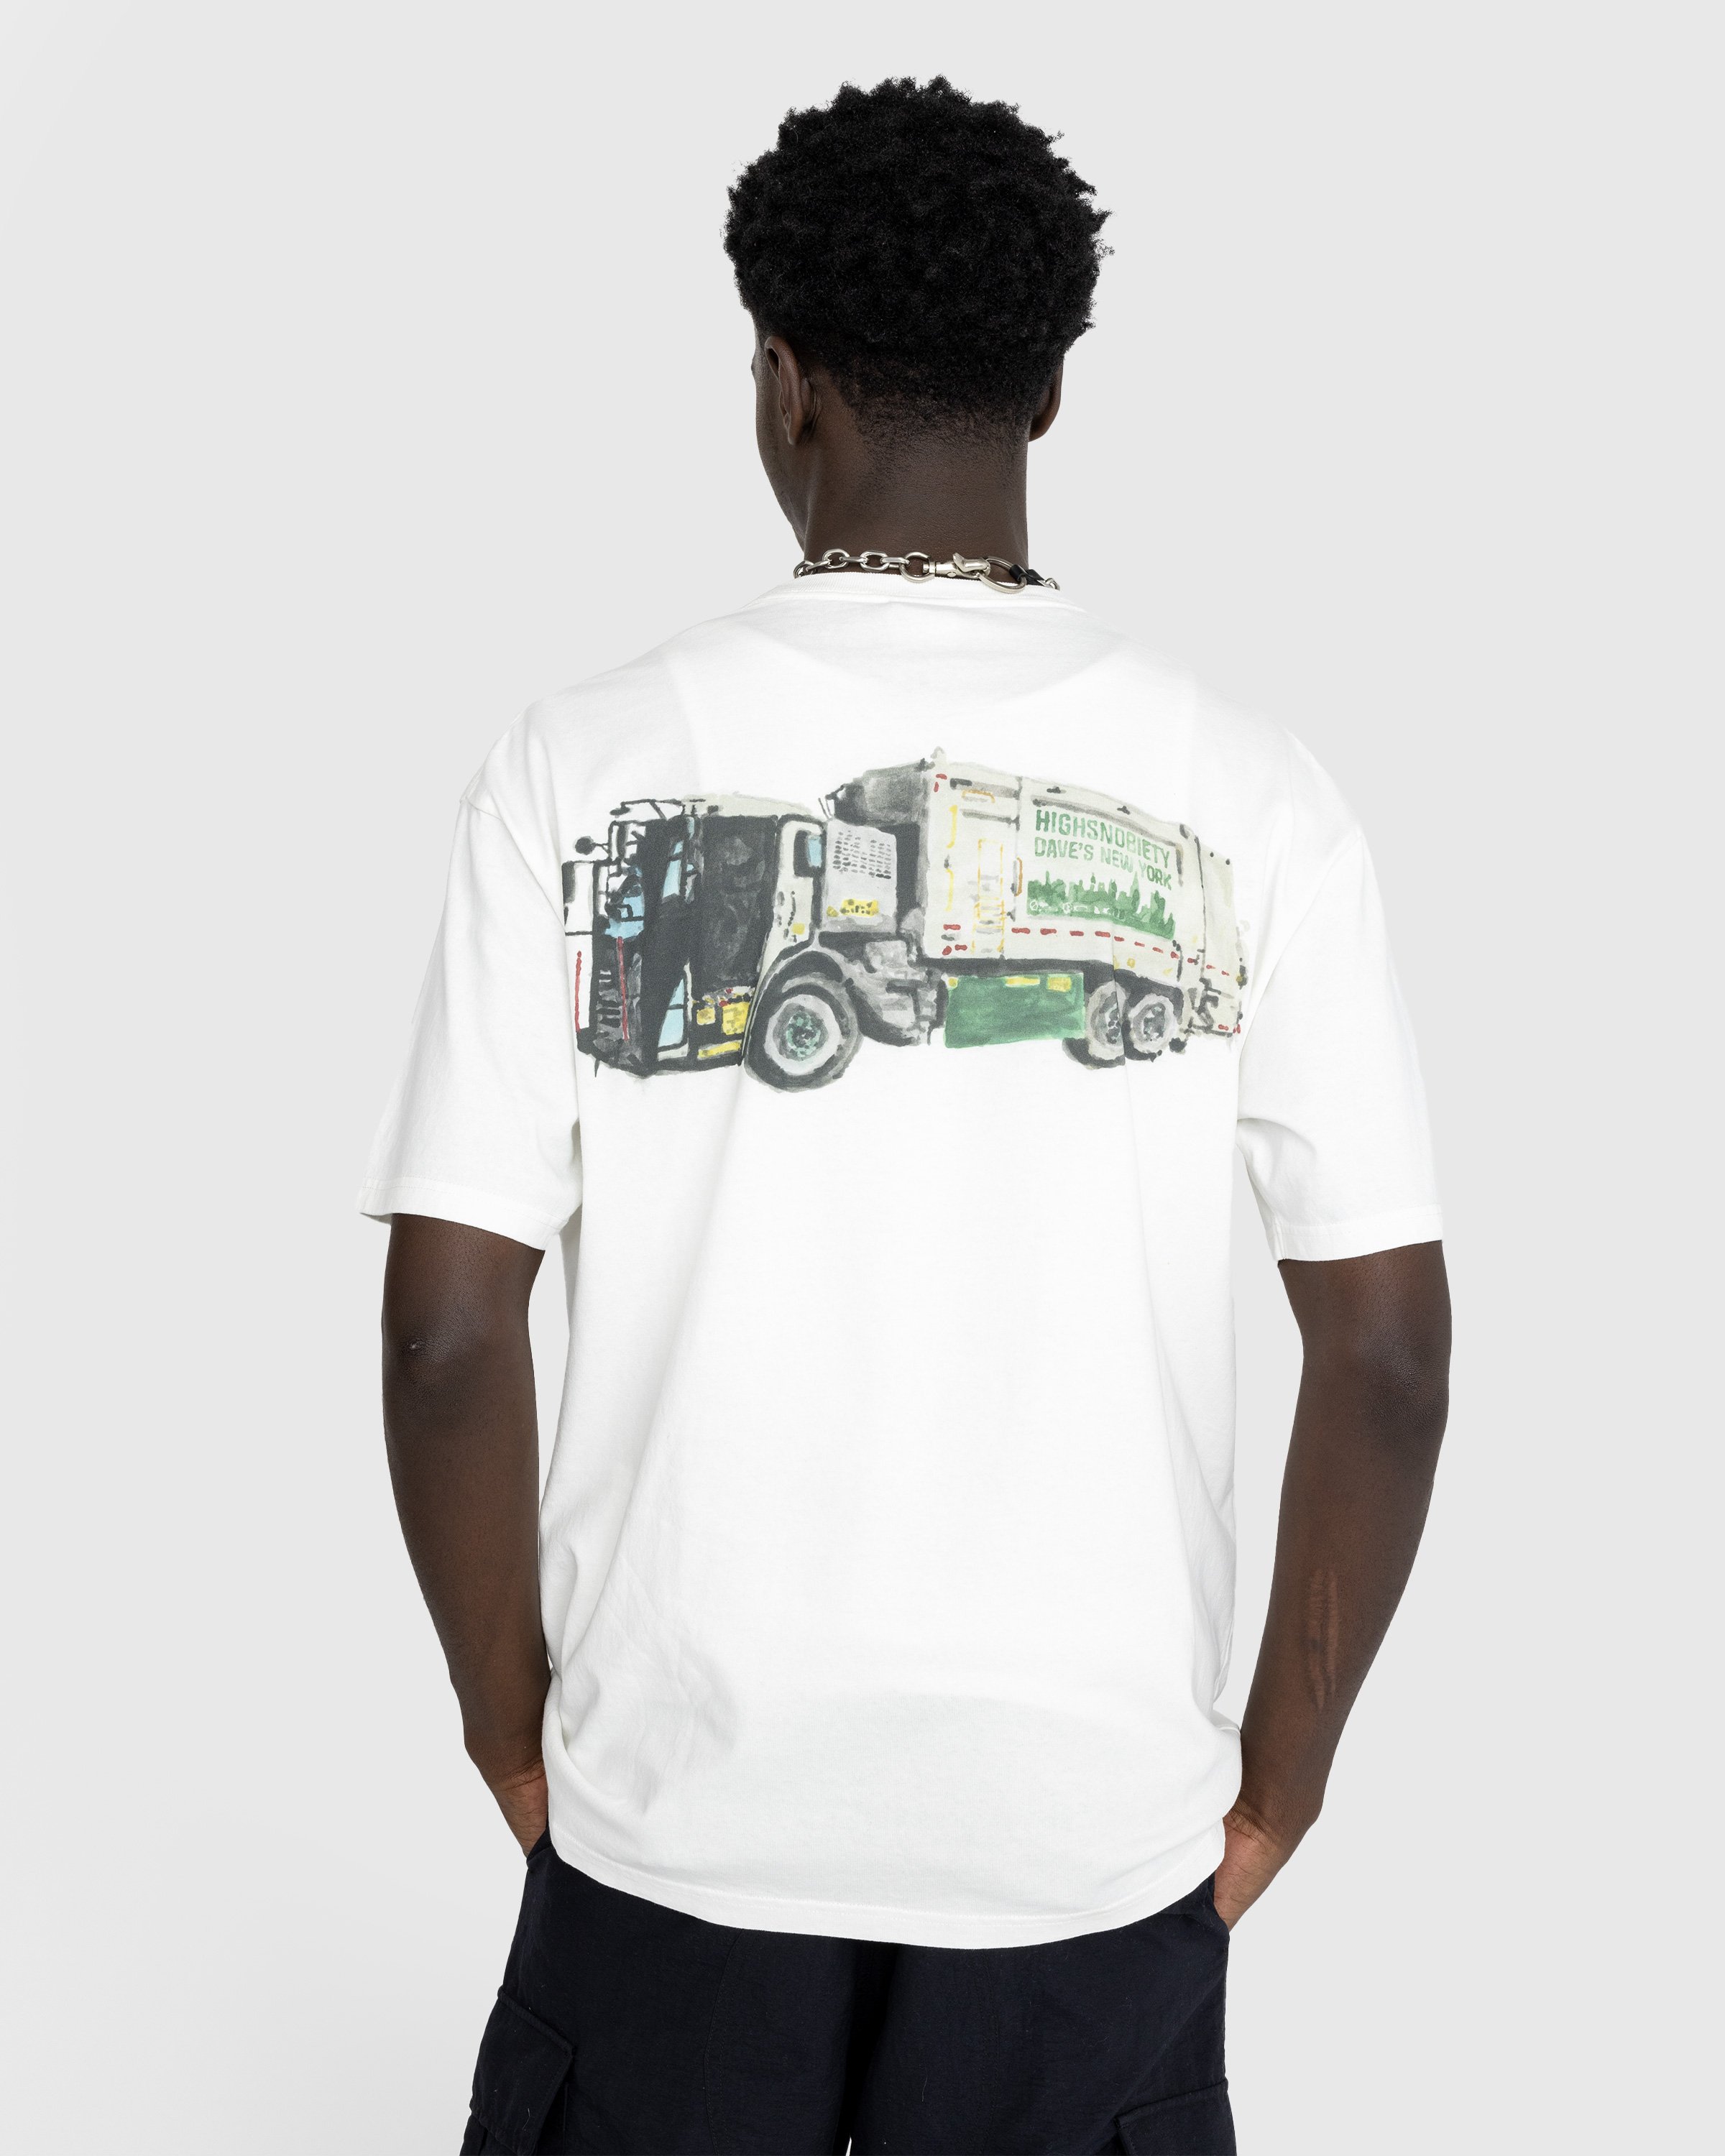 Dave's New York x Highsnobiety - White "Sanitation Truck" T-Shirt - Clothing - White - Image 4